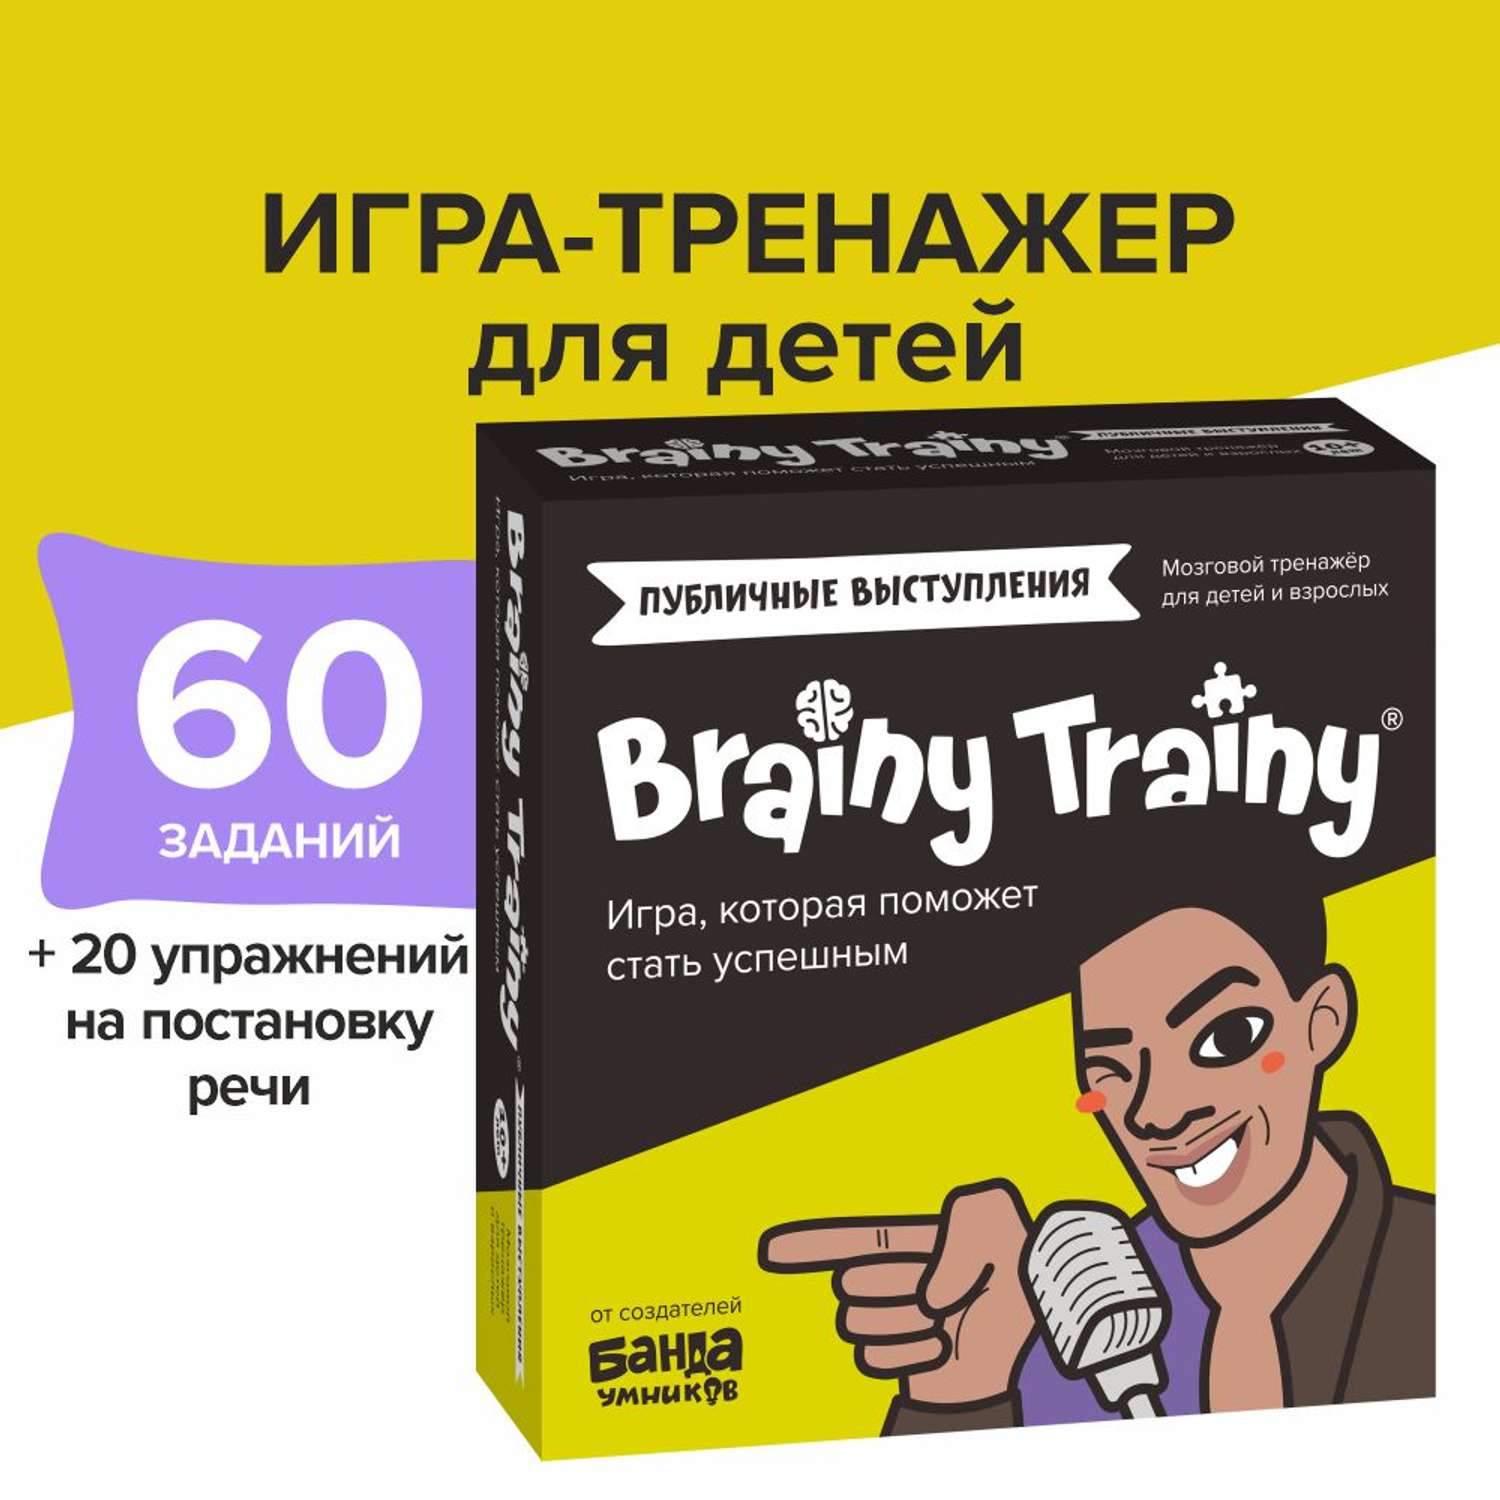 Игра-головоломка Brainy Trainy Публичные выступления - фото 1